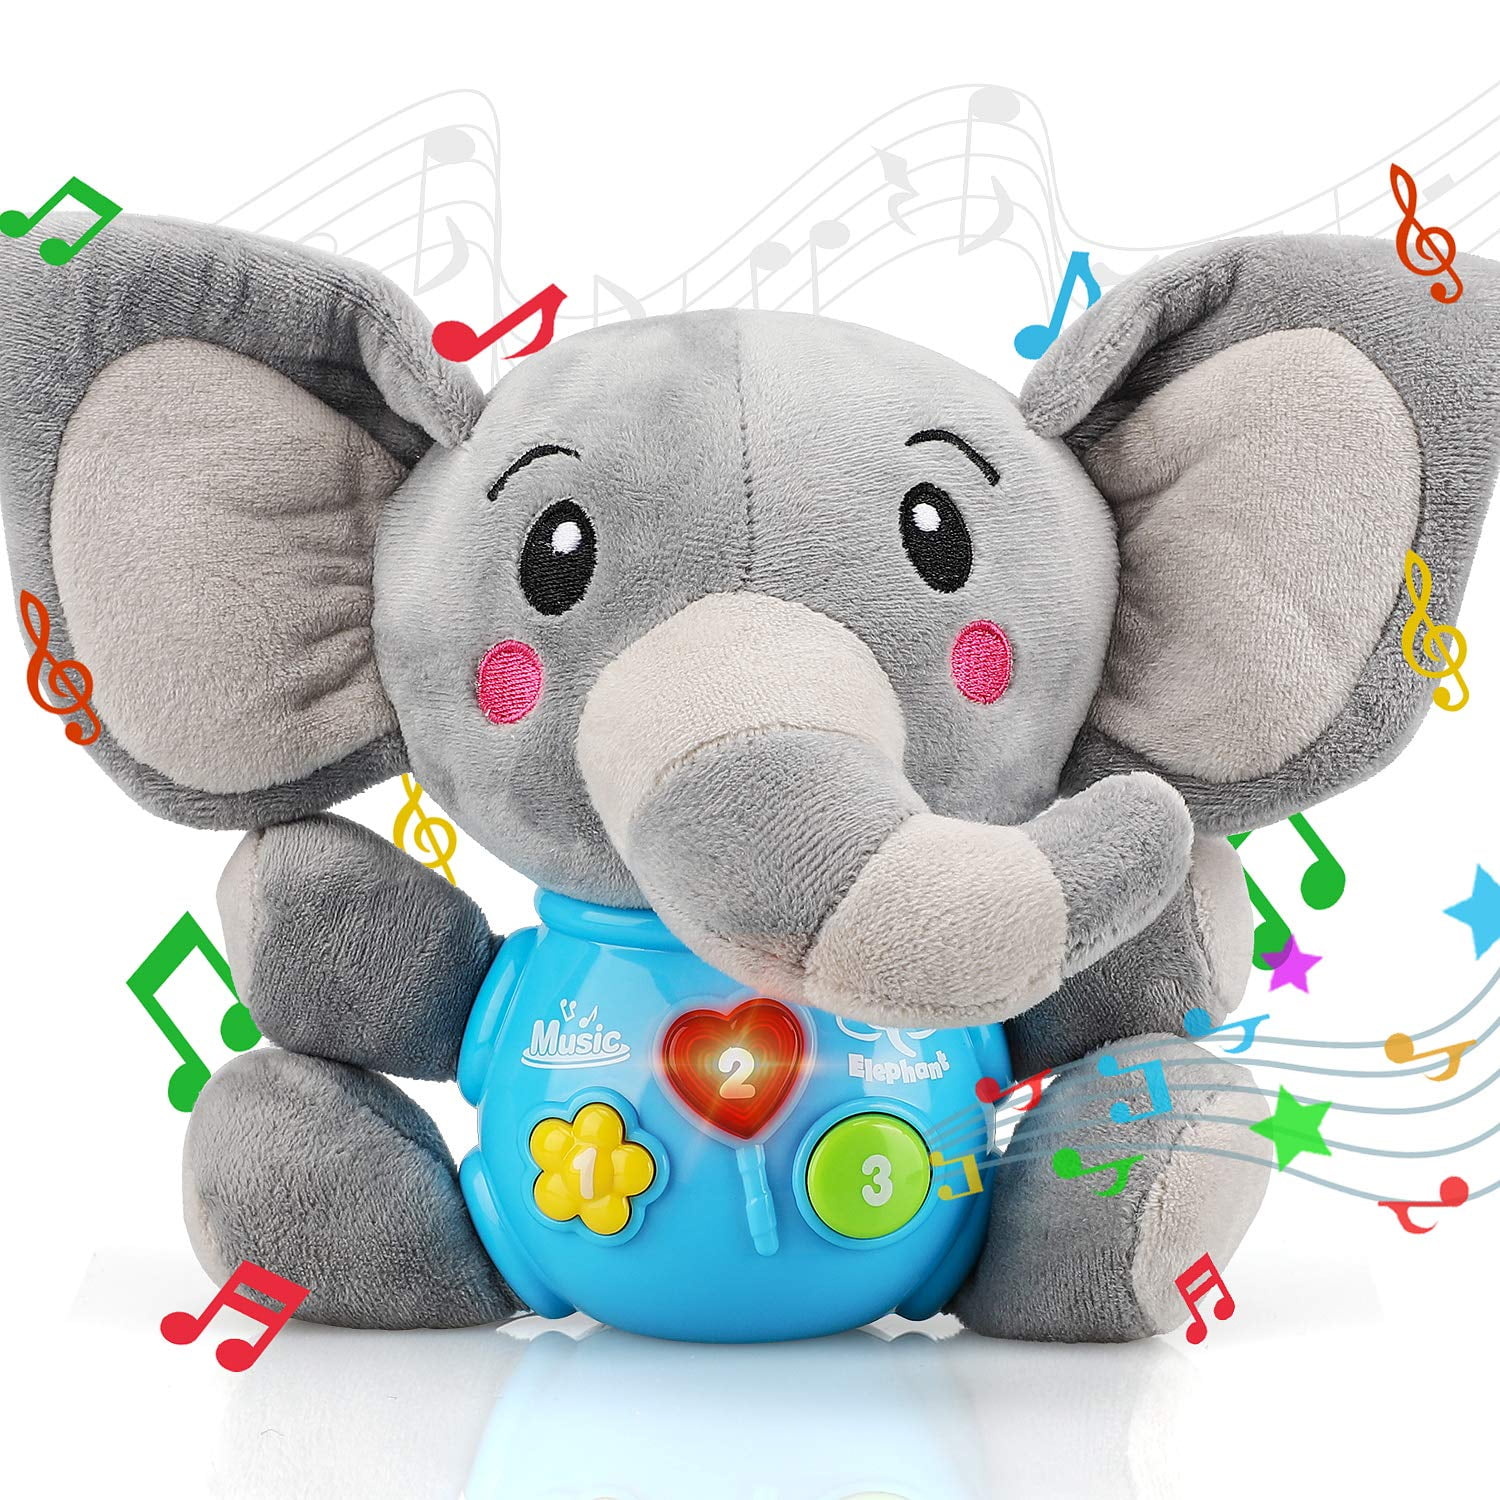 Baby Plush Singing Toys LED Music Cuddly Toy 